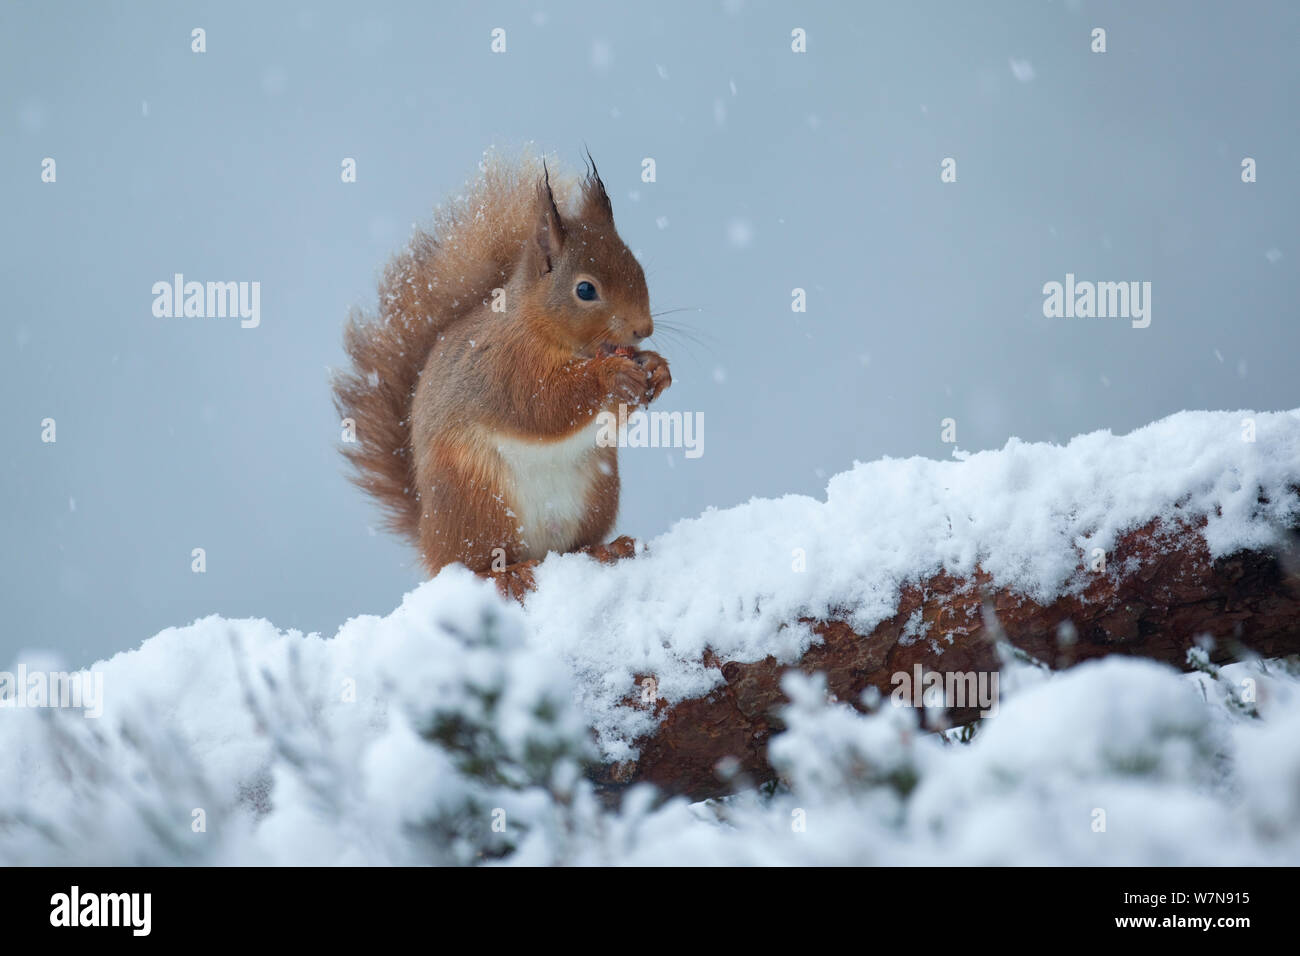 Red scoiattolo (Sciurus vulgaris) alimentazione in caduta di neve. Glenfeshie, Scozia, gennaio. Foto Stock